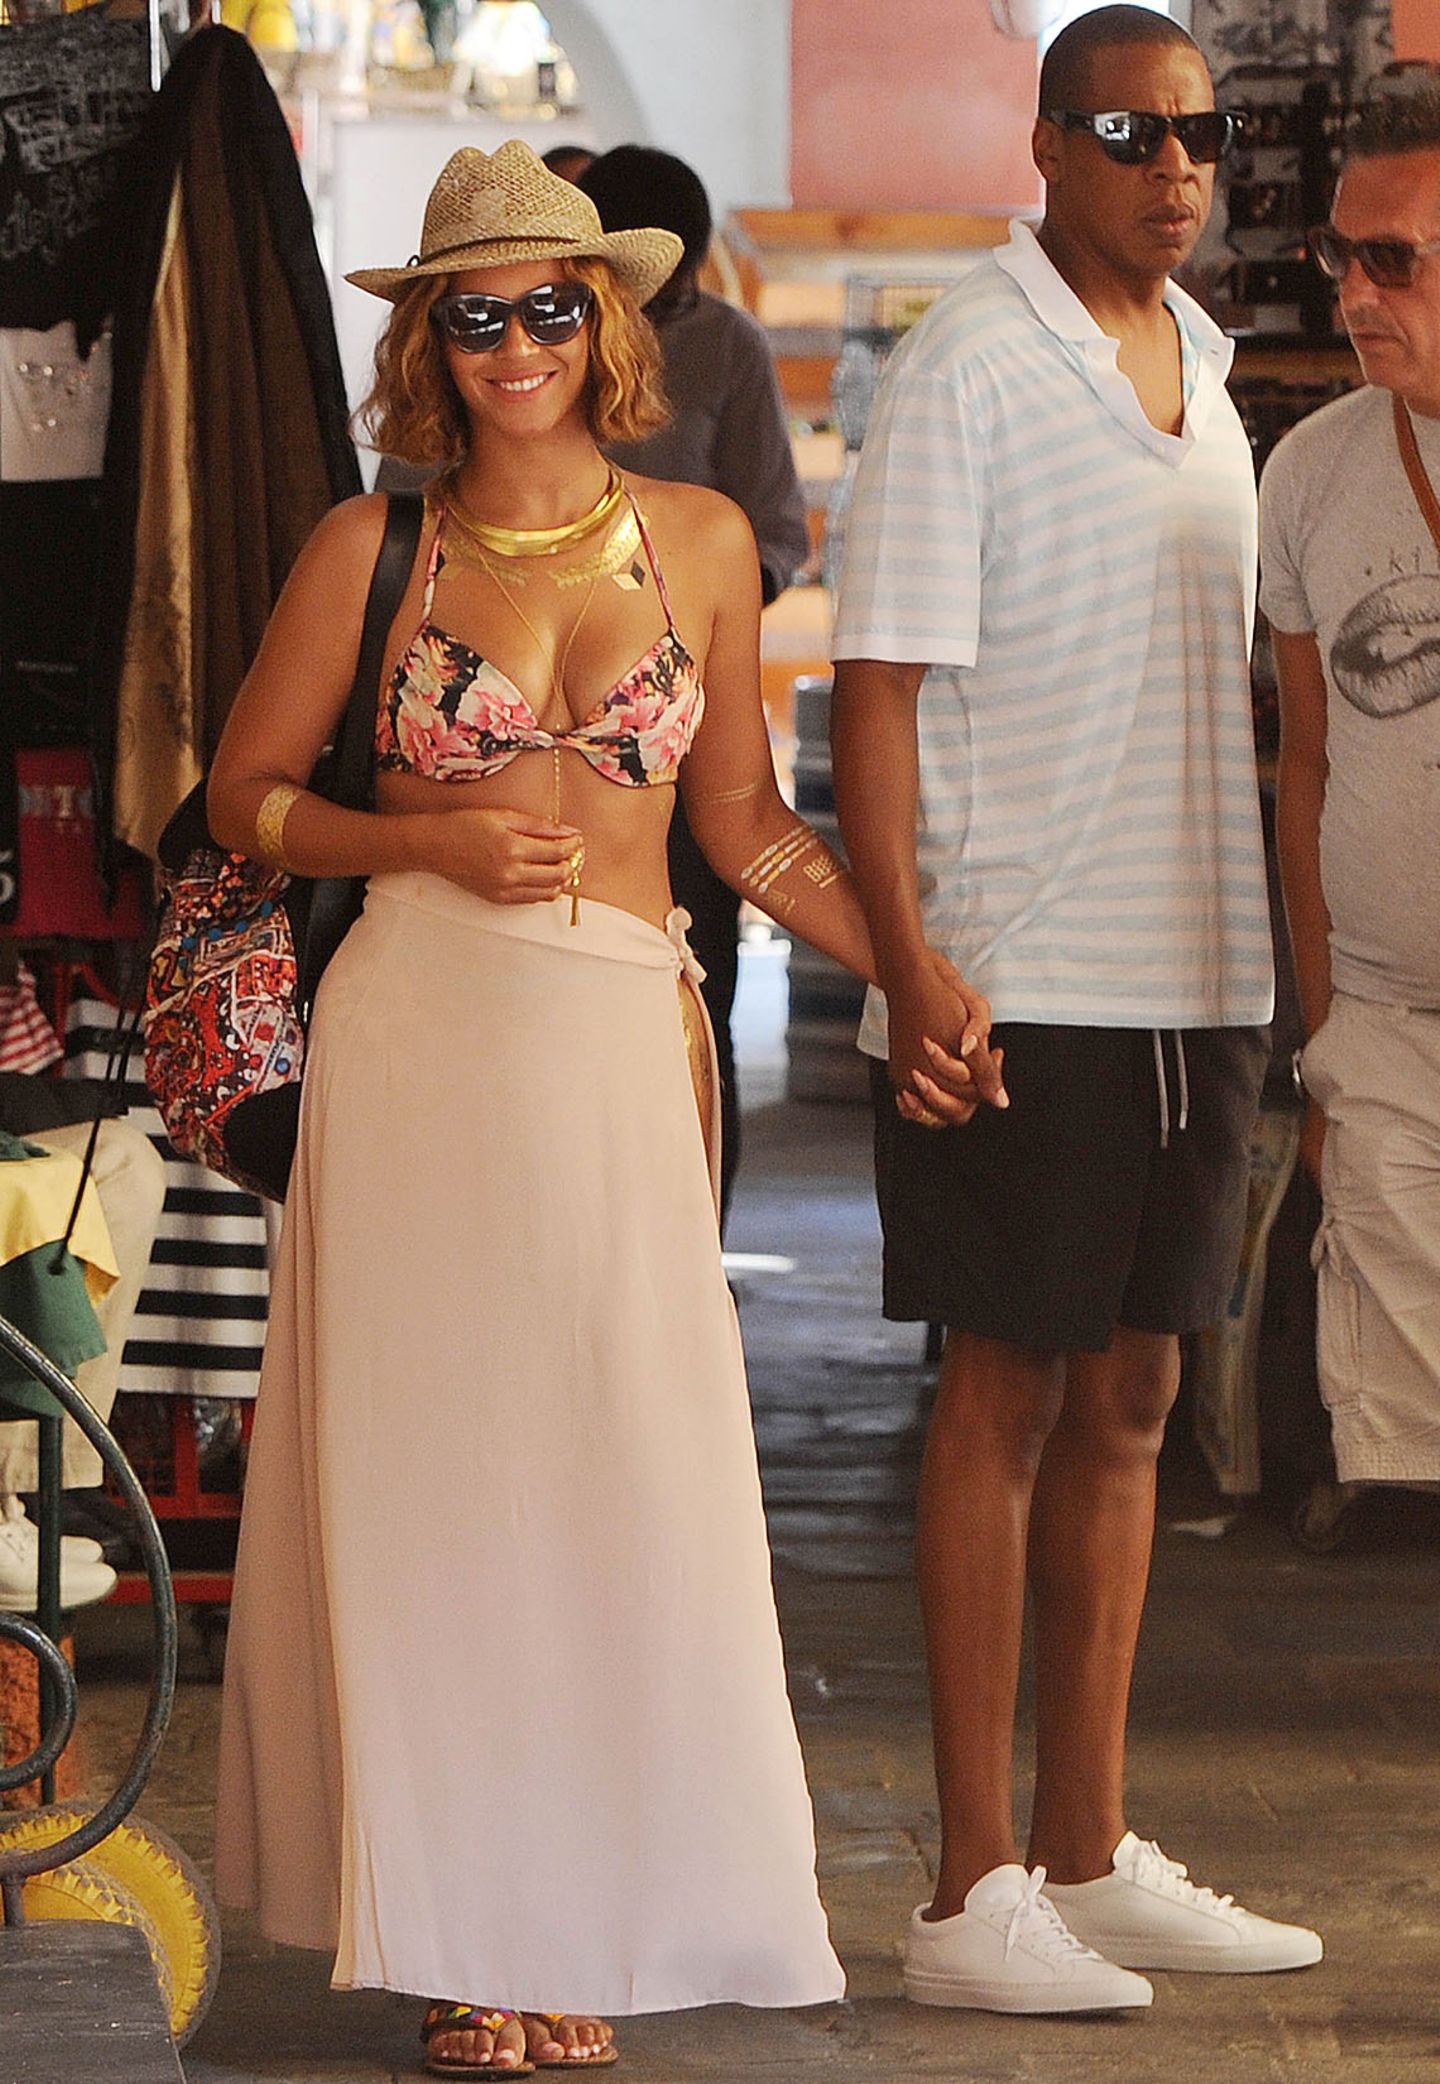 Auch Beyoncé ist im Topshop-Fieber! Im Portofino-Urlaub mit ihrem Mann Jay-Z mag die Sängerin es luftig und trägt ein geblümtes Bikinioberteil für 20€ und einen bunt gemusterten Rucksack für 48€ der britischen Modekette.